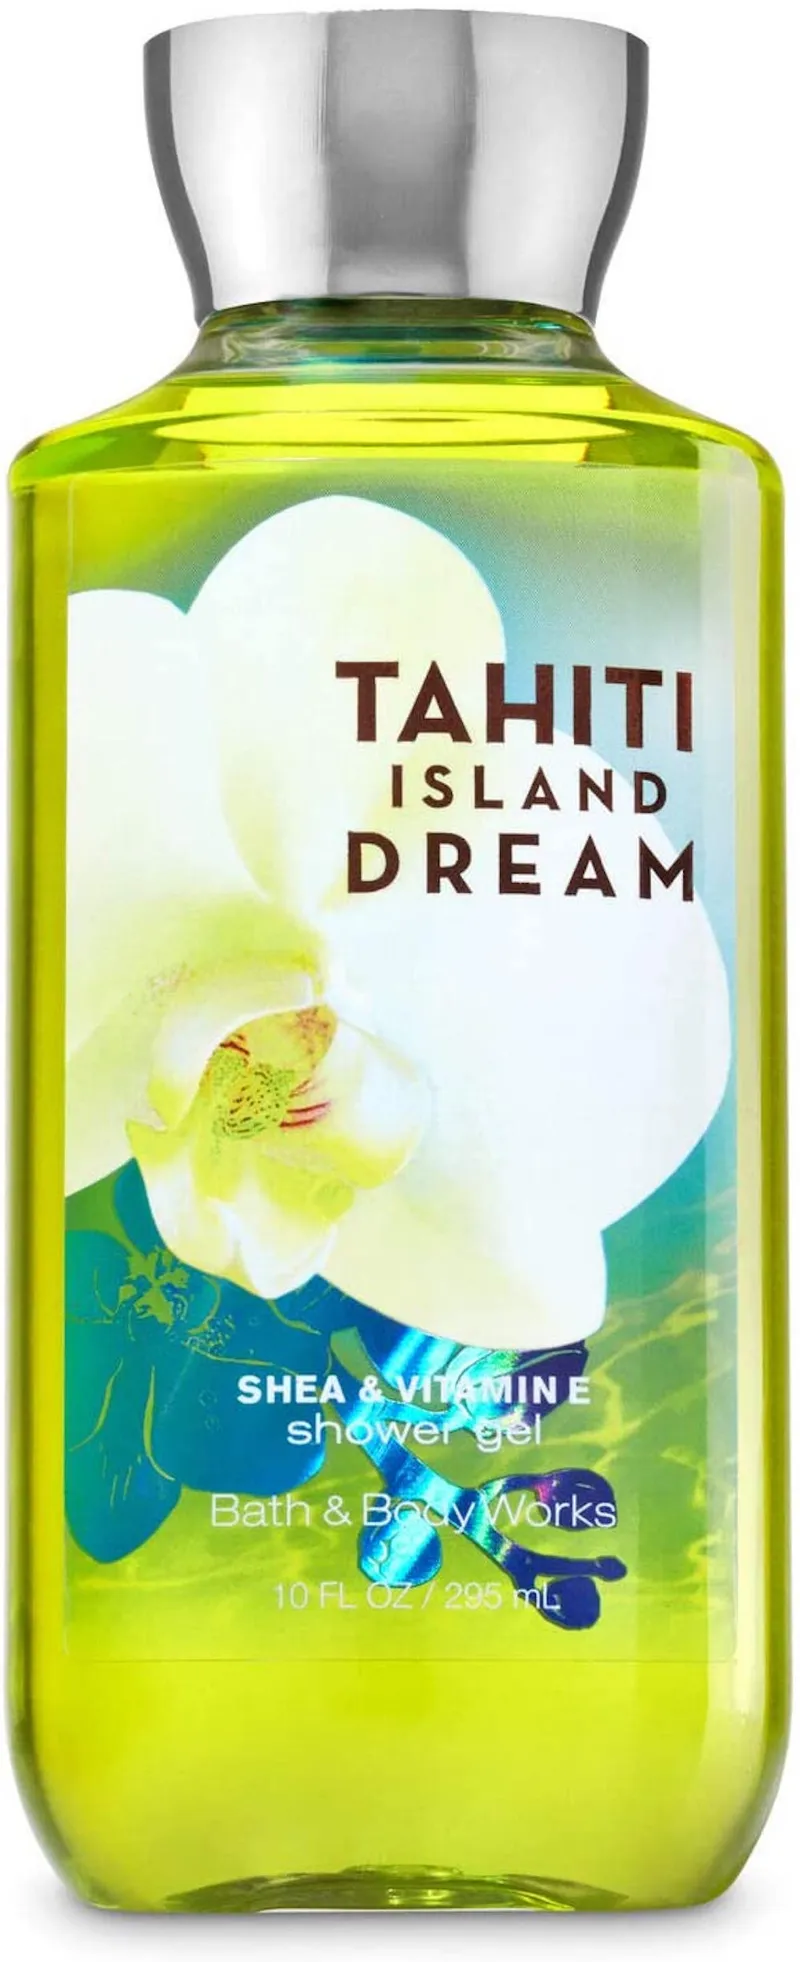 Dream tahiti island Tahiti Island